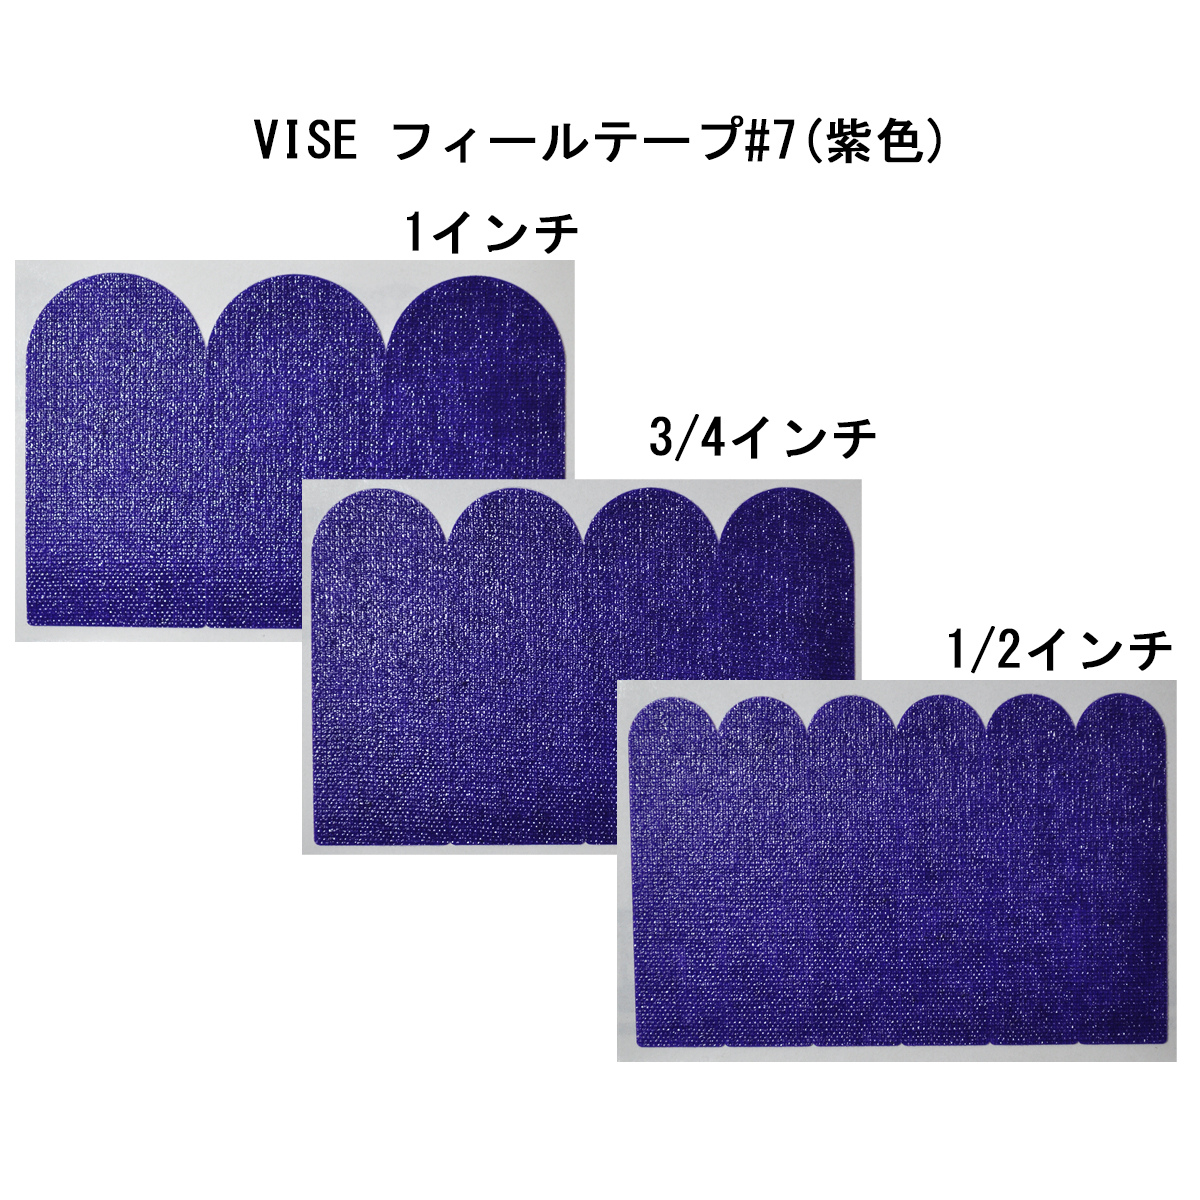 VISE フィールテープ#7(紫色) - ウインドウを閉じる